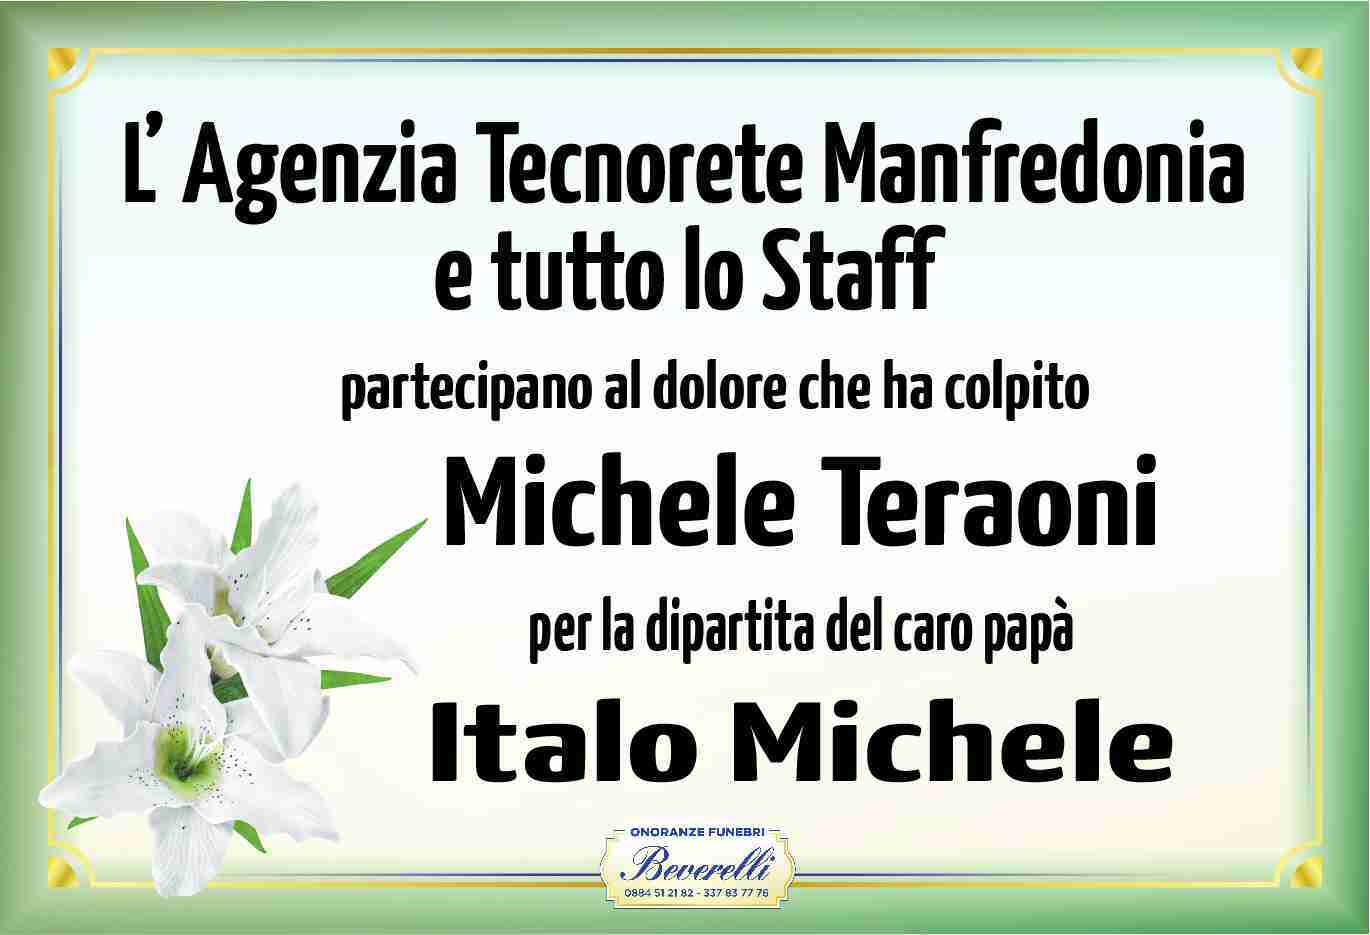 Italo Michele Teraoni Prioletti